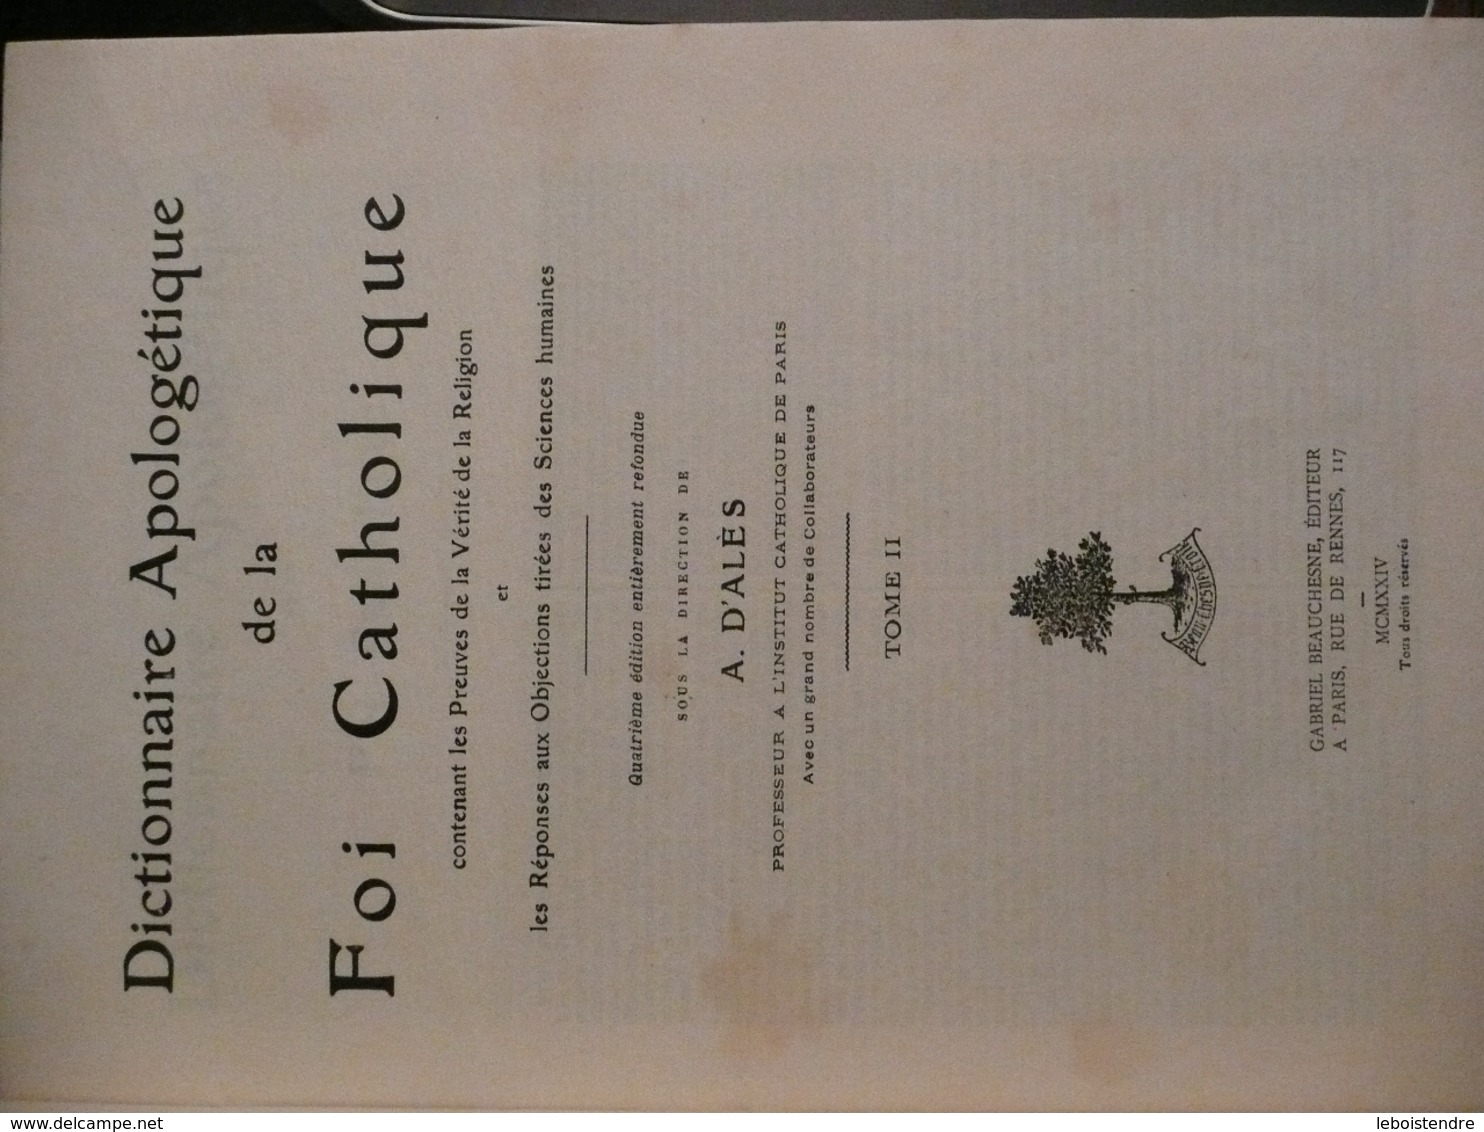 DICTIONNAIRE APOLOGETIQUE DE LA FOI CATHOLIQUE 1924 - 1931 A. D'ALES 4 VOLUMES + TABLE ANALYTIQUE B. LOTH 4E EDITION